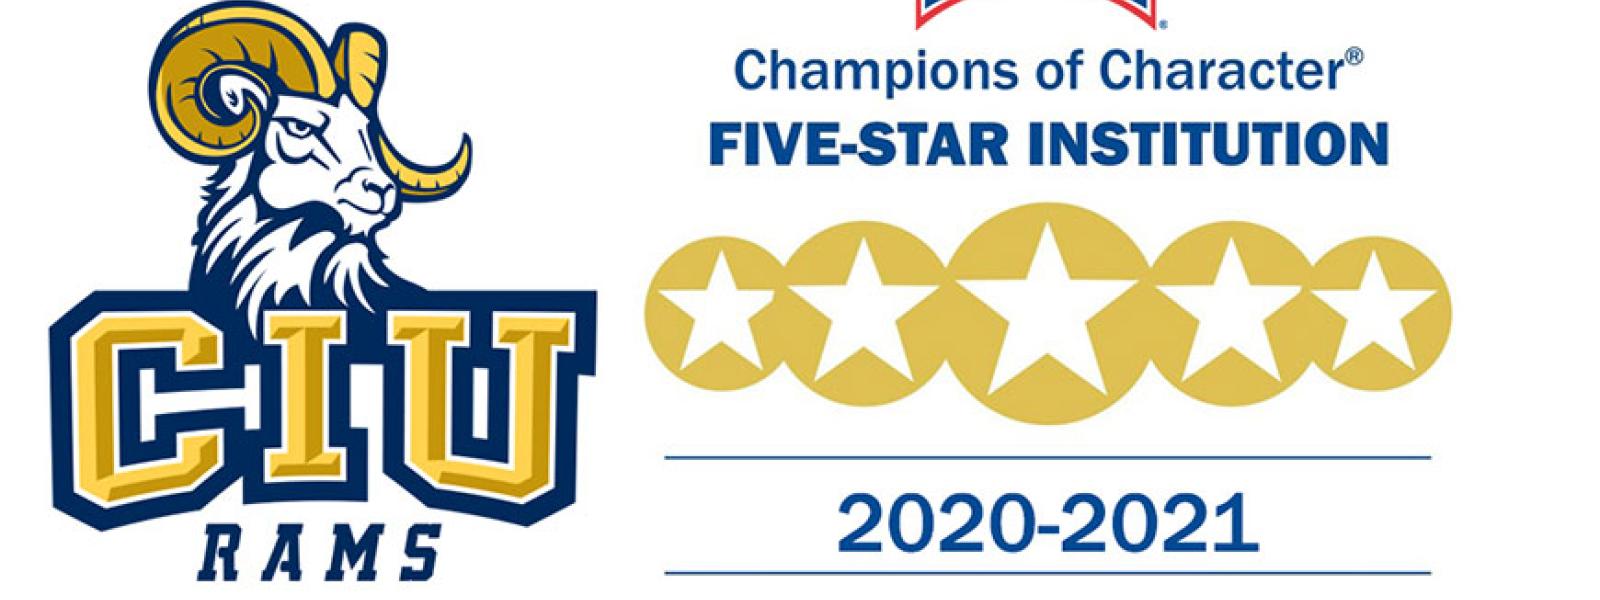 CIU Rams Five Star Institution